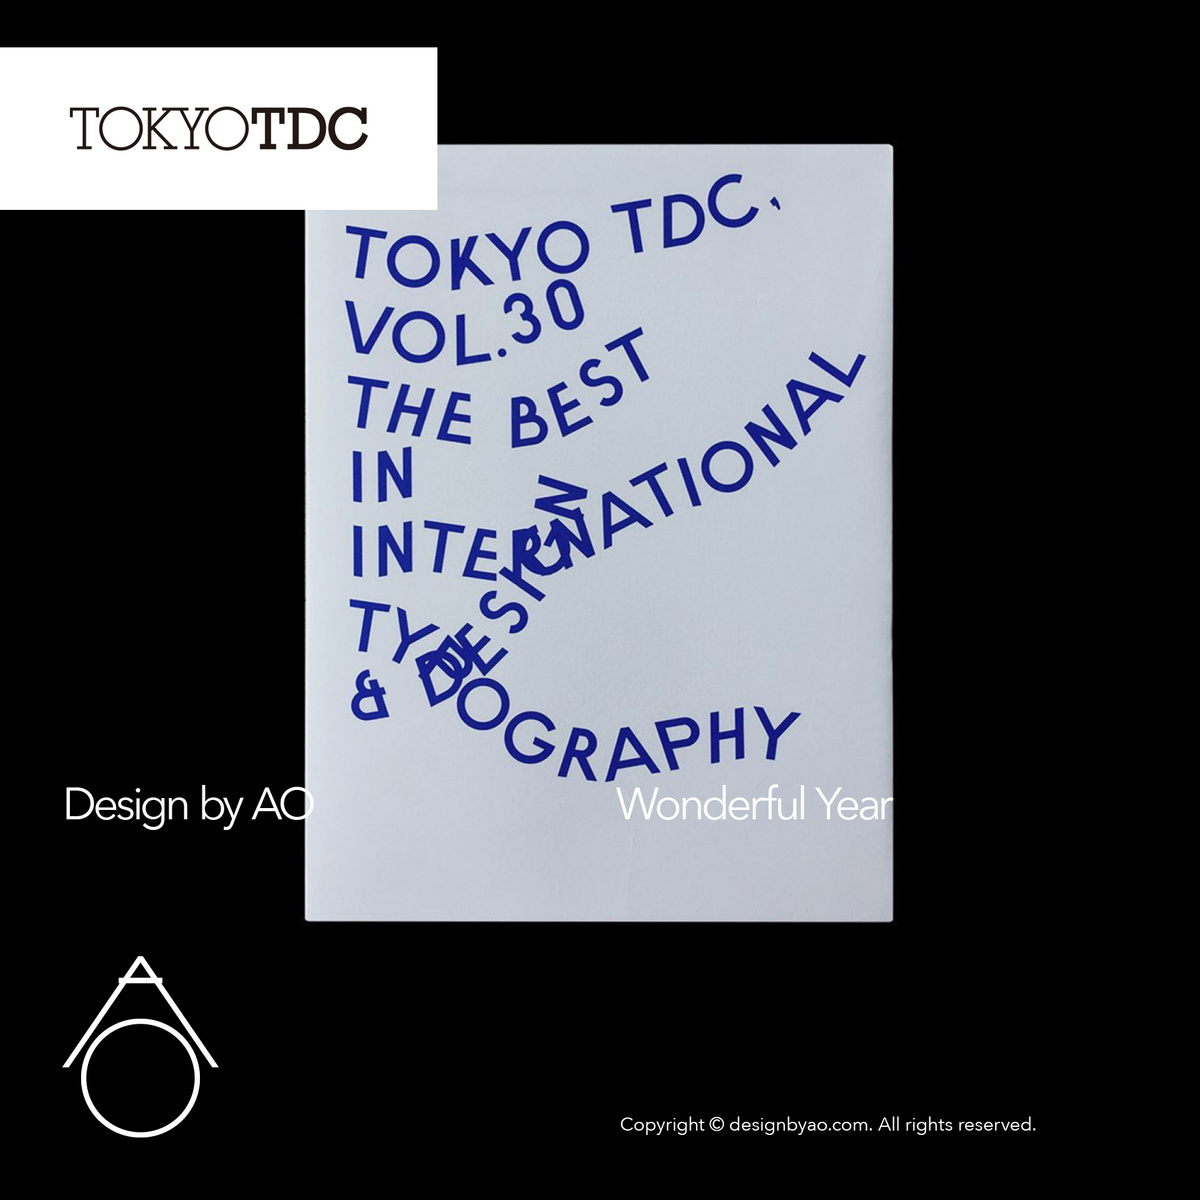 TOKYO TDC 2019 - Design by AO 合伙人设计| 致力于品牌形象设计VI 